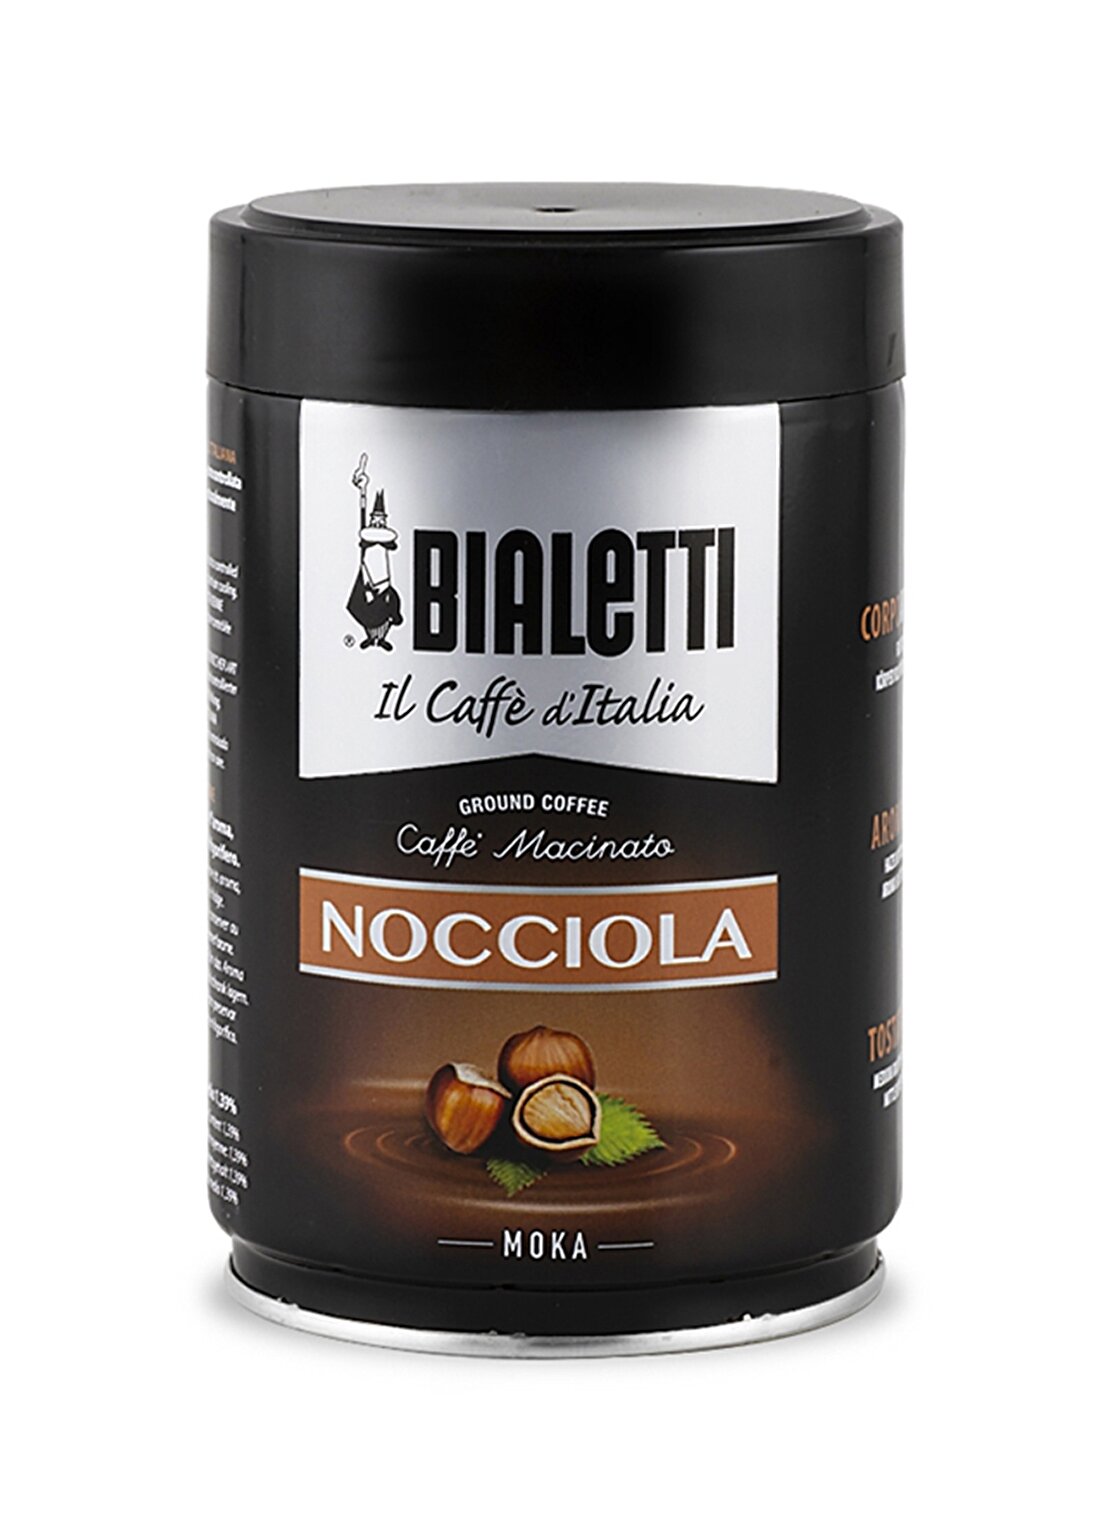 Bialetti Coffee Tin Moka Nocciola Hazelnut 250G Toz Kahve